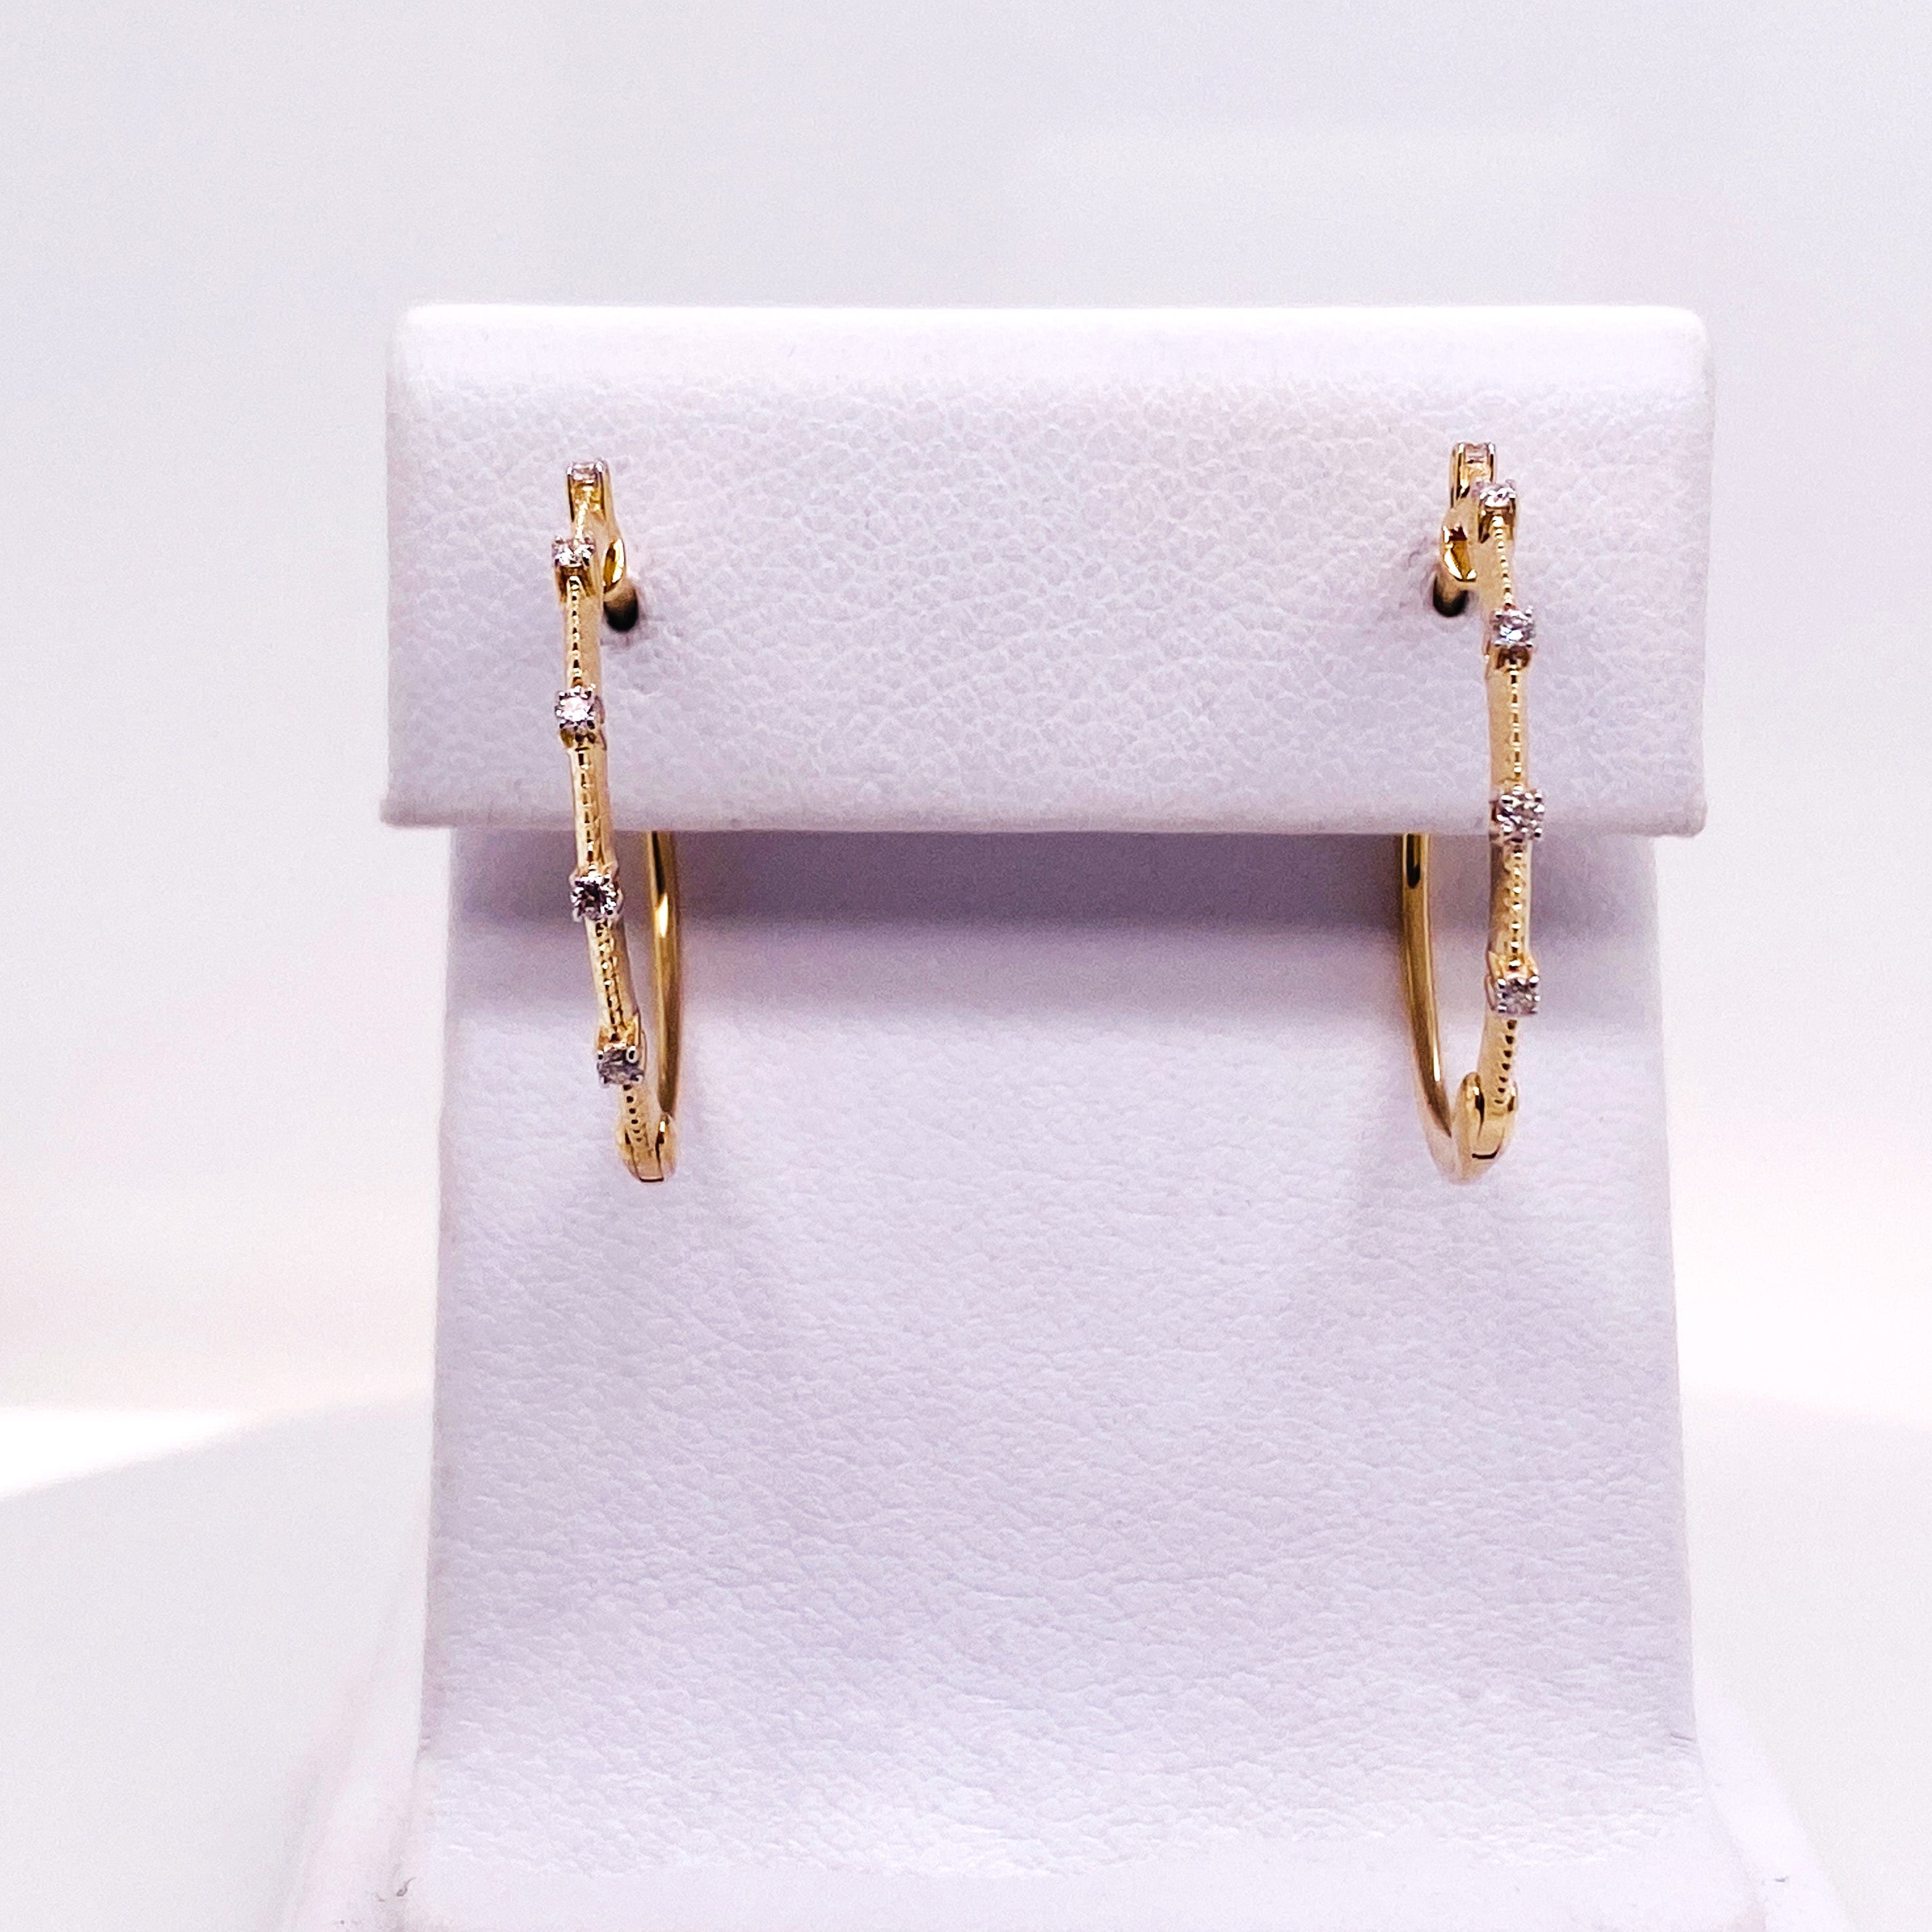 Contemporary Diamond Station Threaded Hoop Earrings in 14k Yellow / White Gold, EG13761 LV For Sale